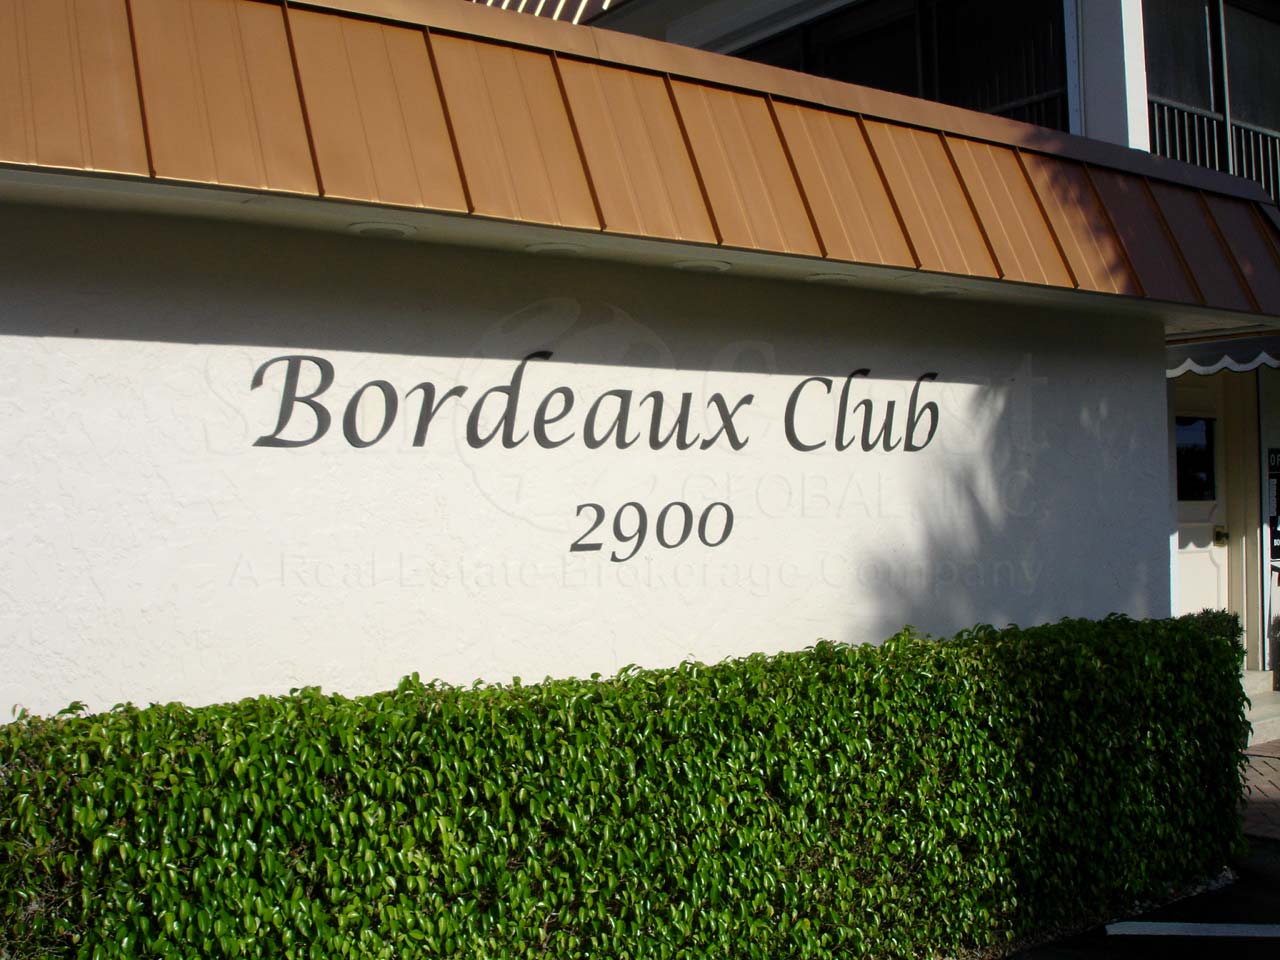 Bordeaux Club Signage